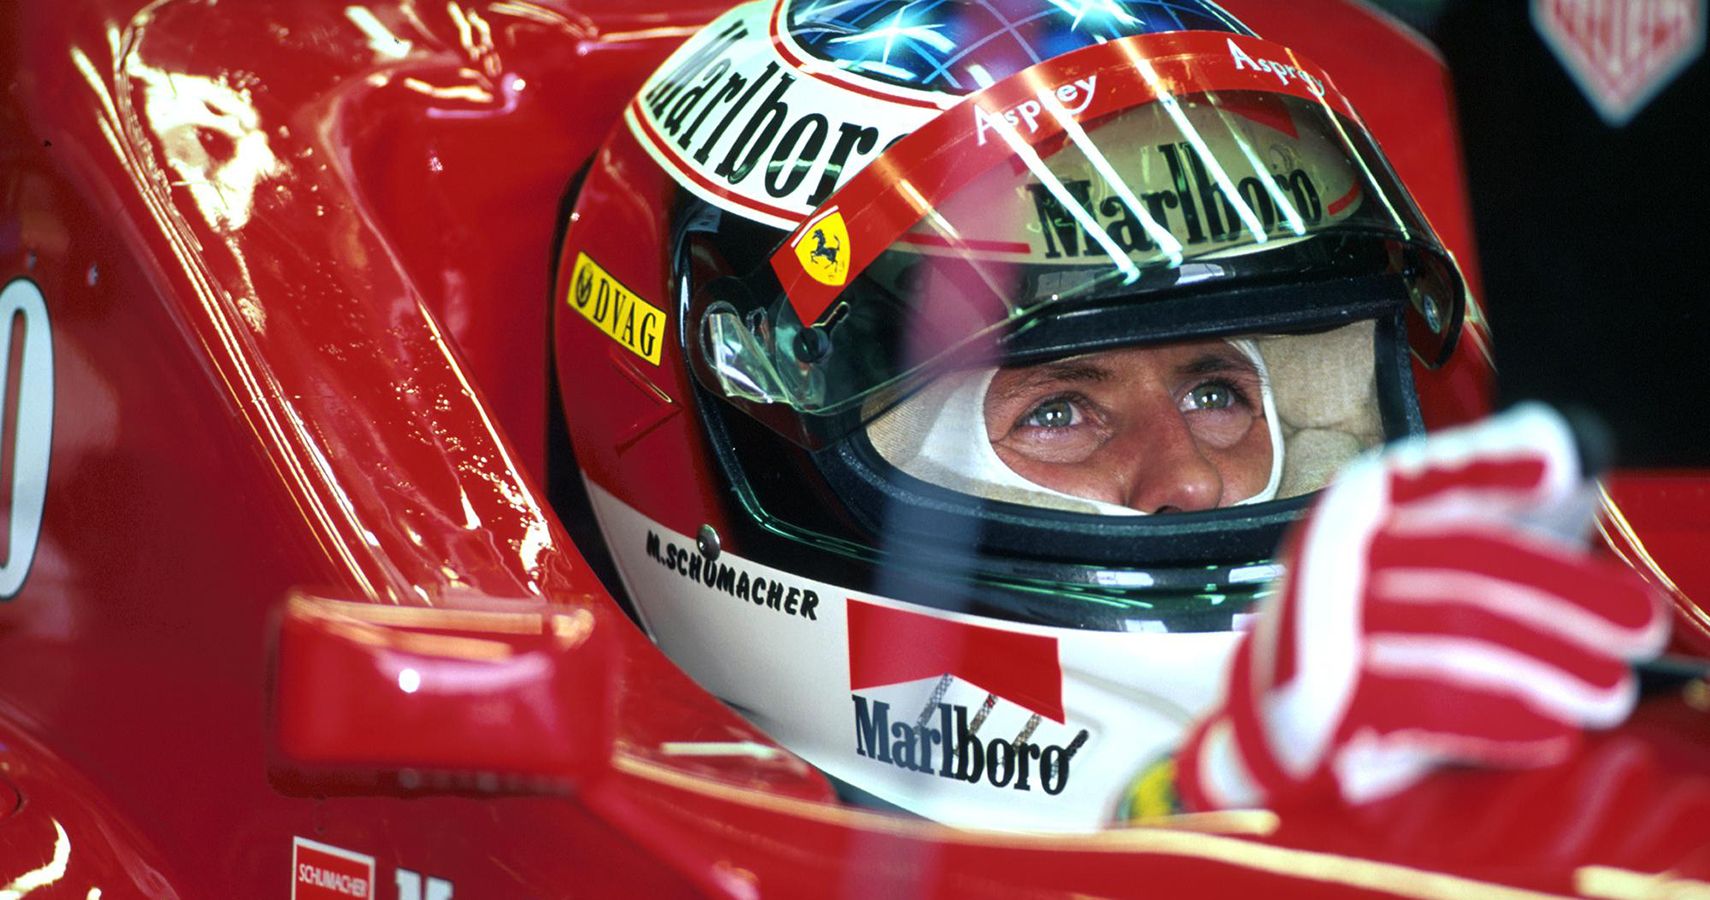 Michael Schumacher Helmet on